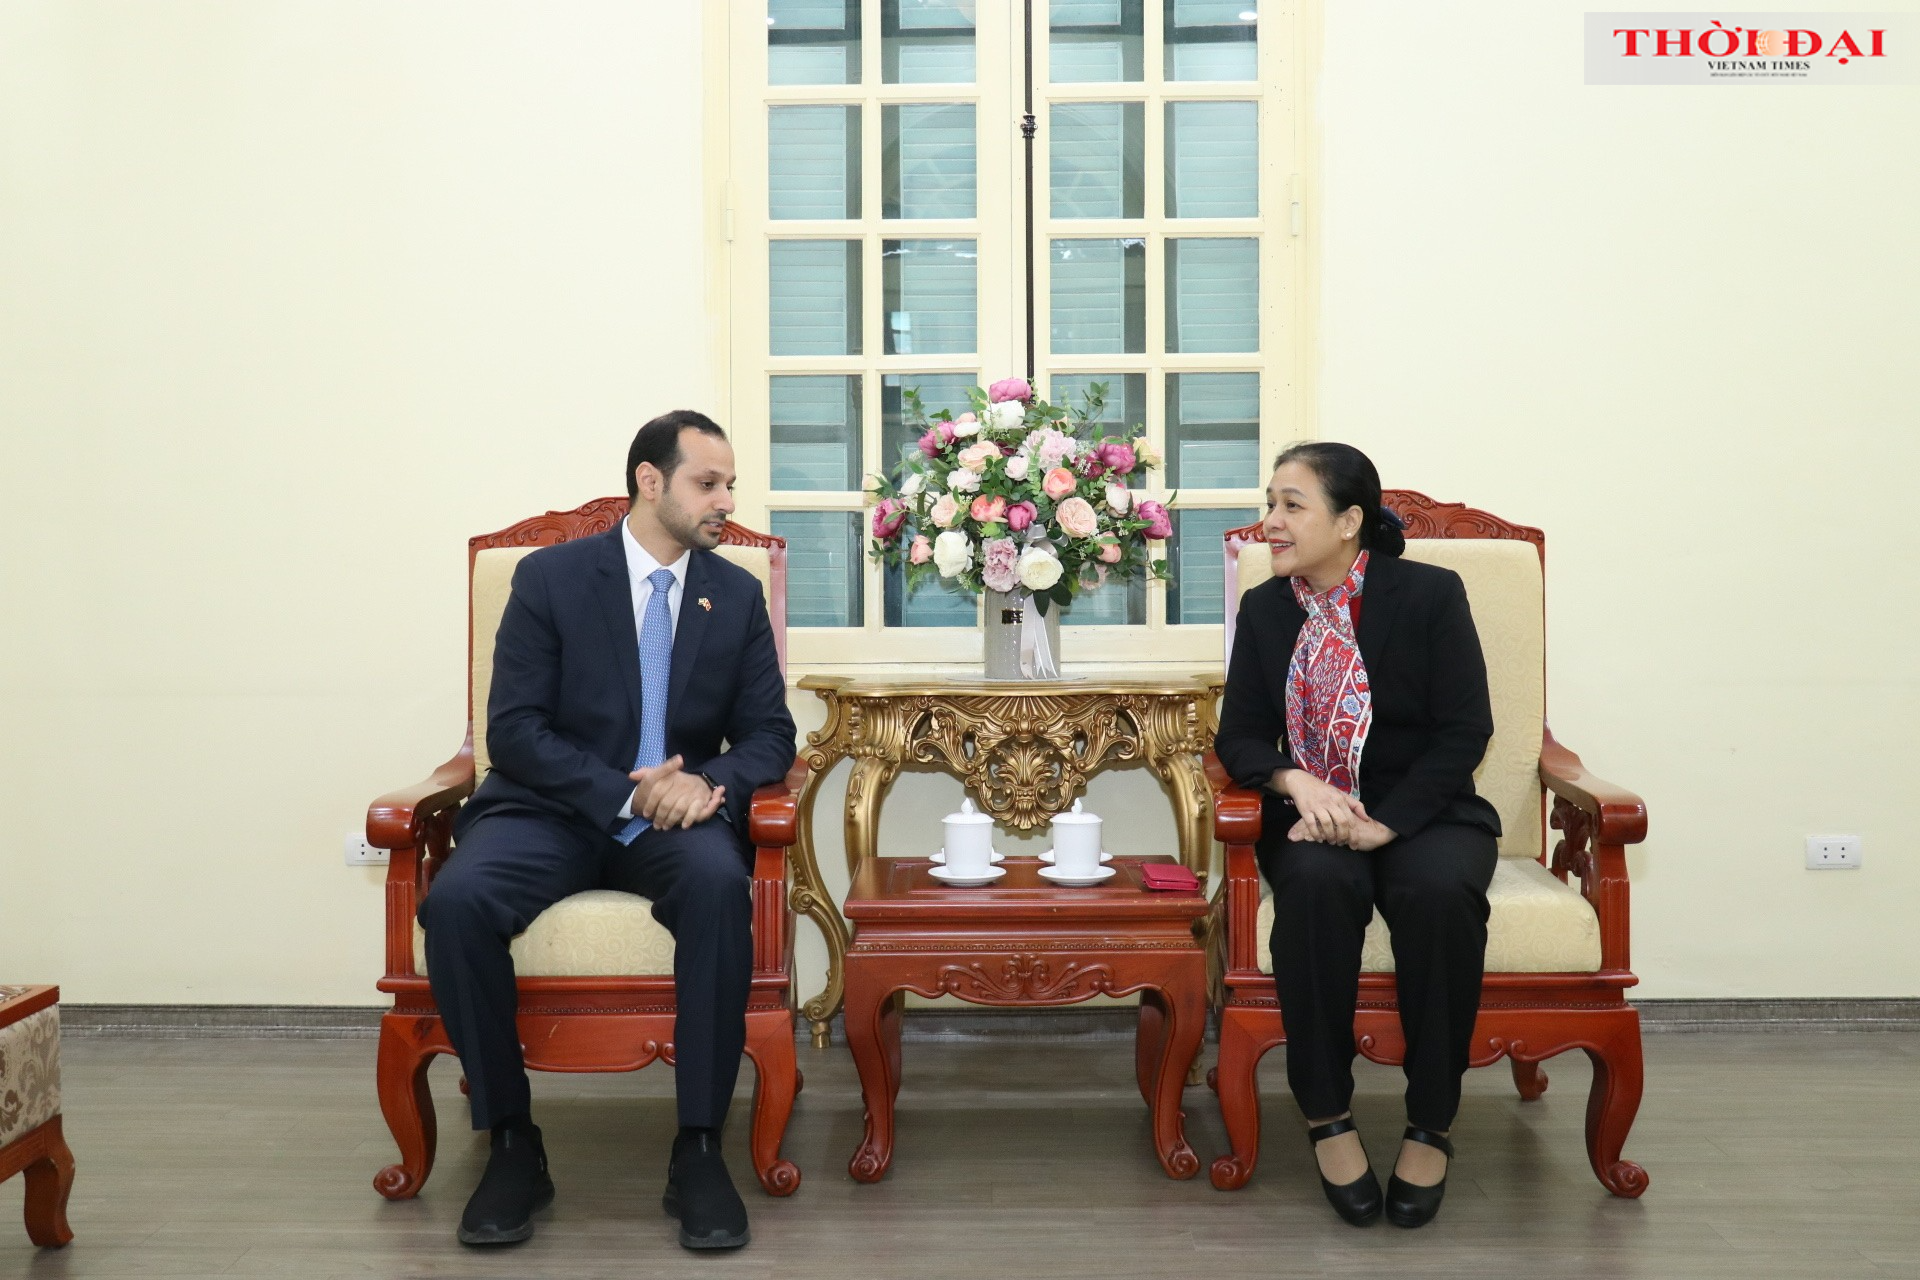  Chủ tịch VUFO Nguyễn Phương Nga (bên phải) trao đổi với ông Abdulla Alhameli, Đại biện lâm thời Đại sứ quán Các Tiểu vương quốc Ả -rập thống nhất (UAE) tại buổi tiếp (Ảnh: Thu Hà).